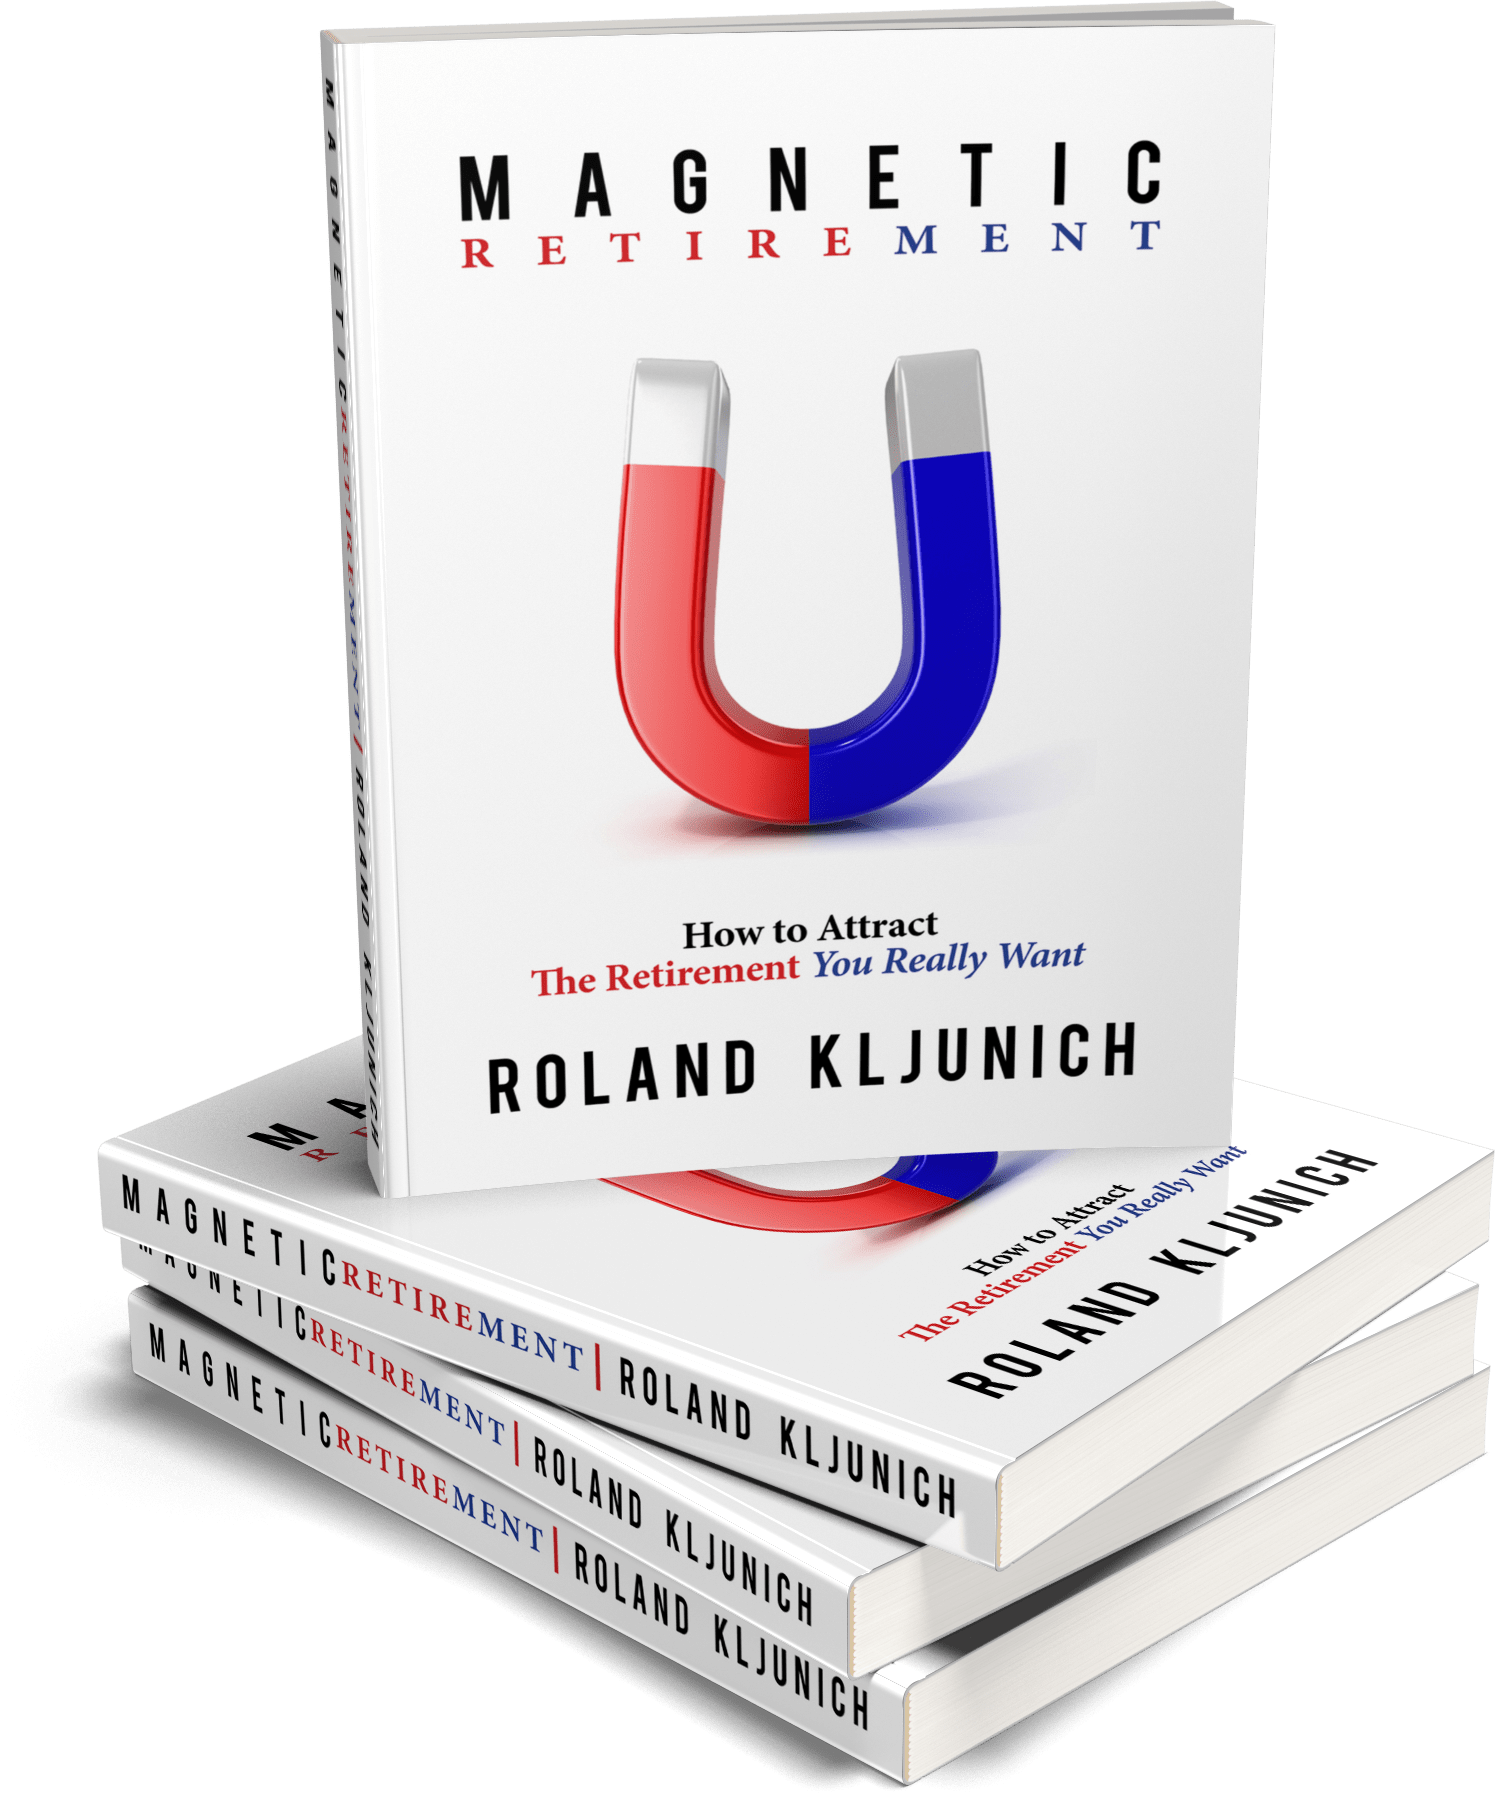 Multiple magnetic retirement books